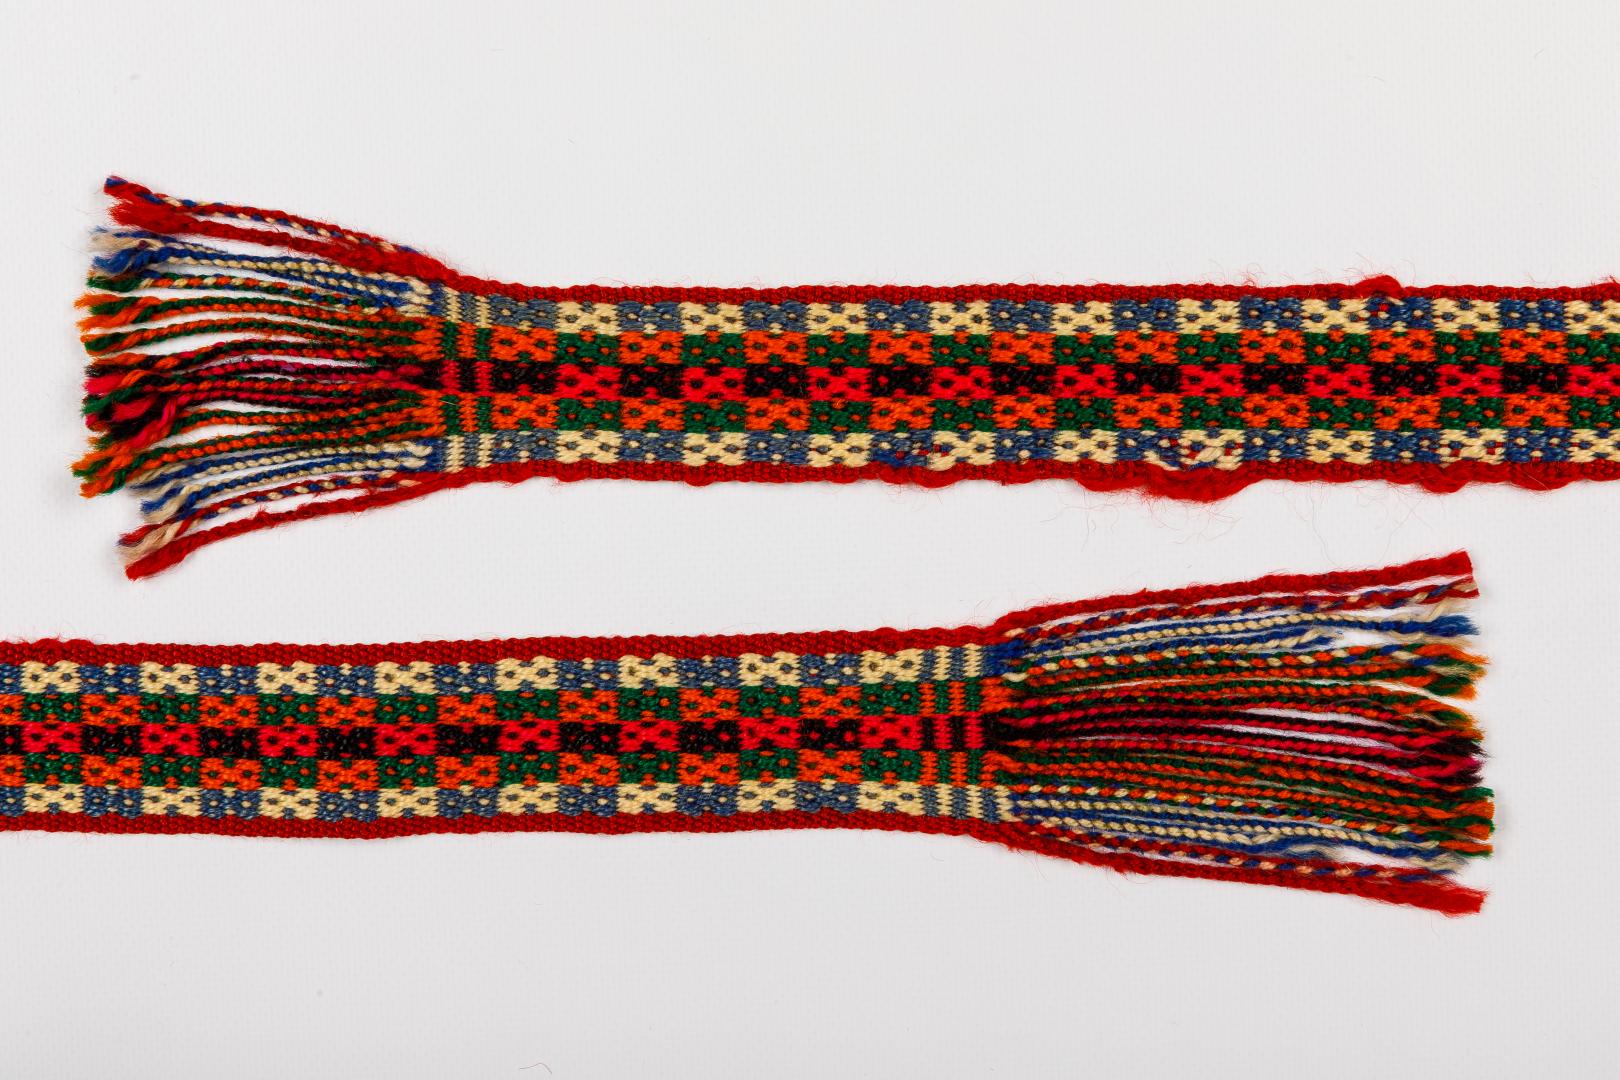 Woven women's kraika (belt)